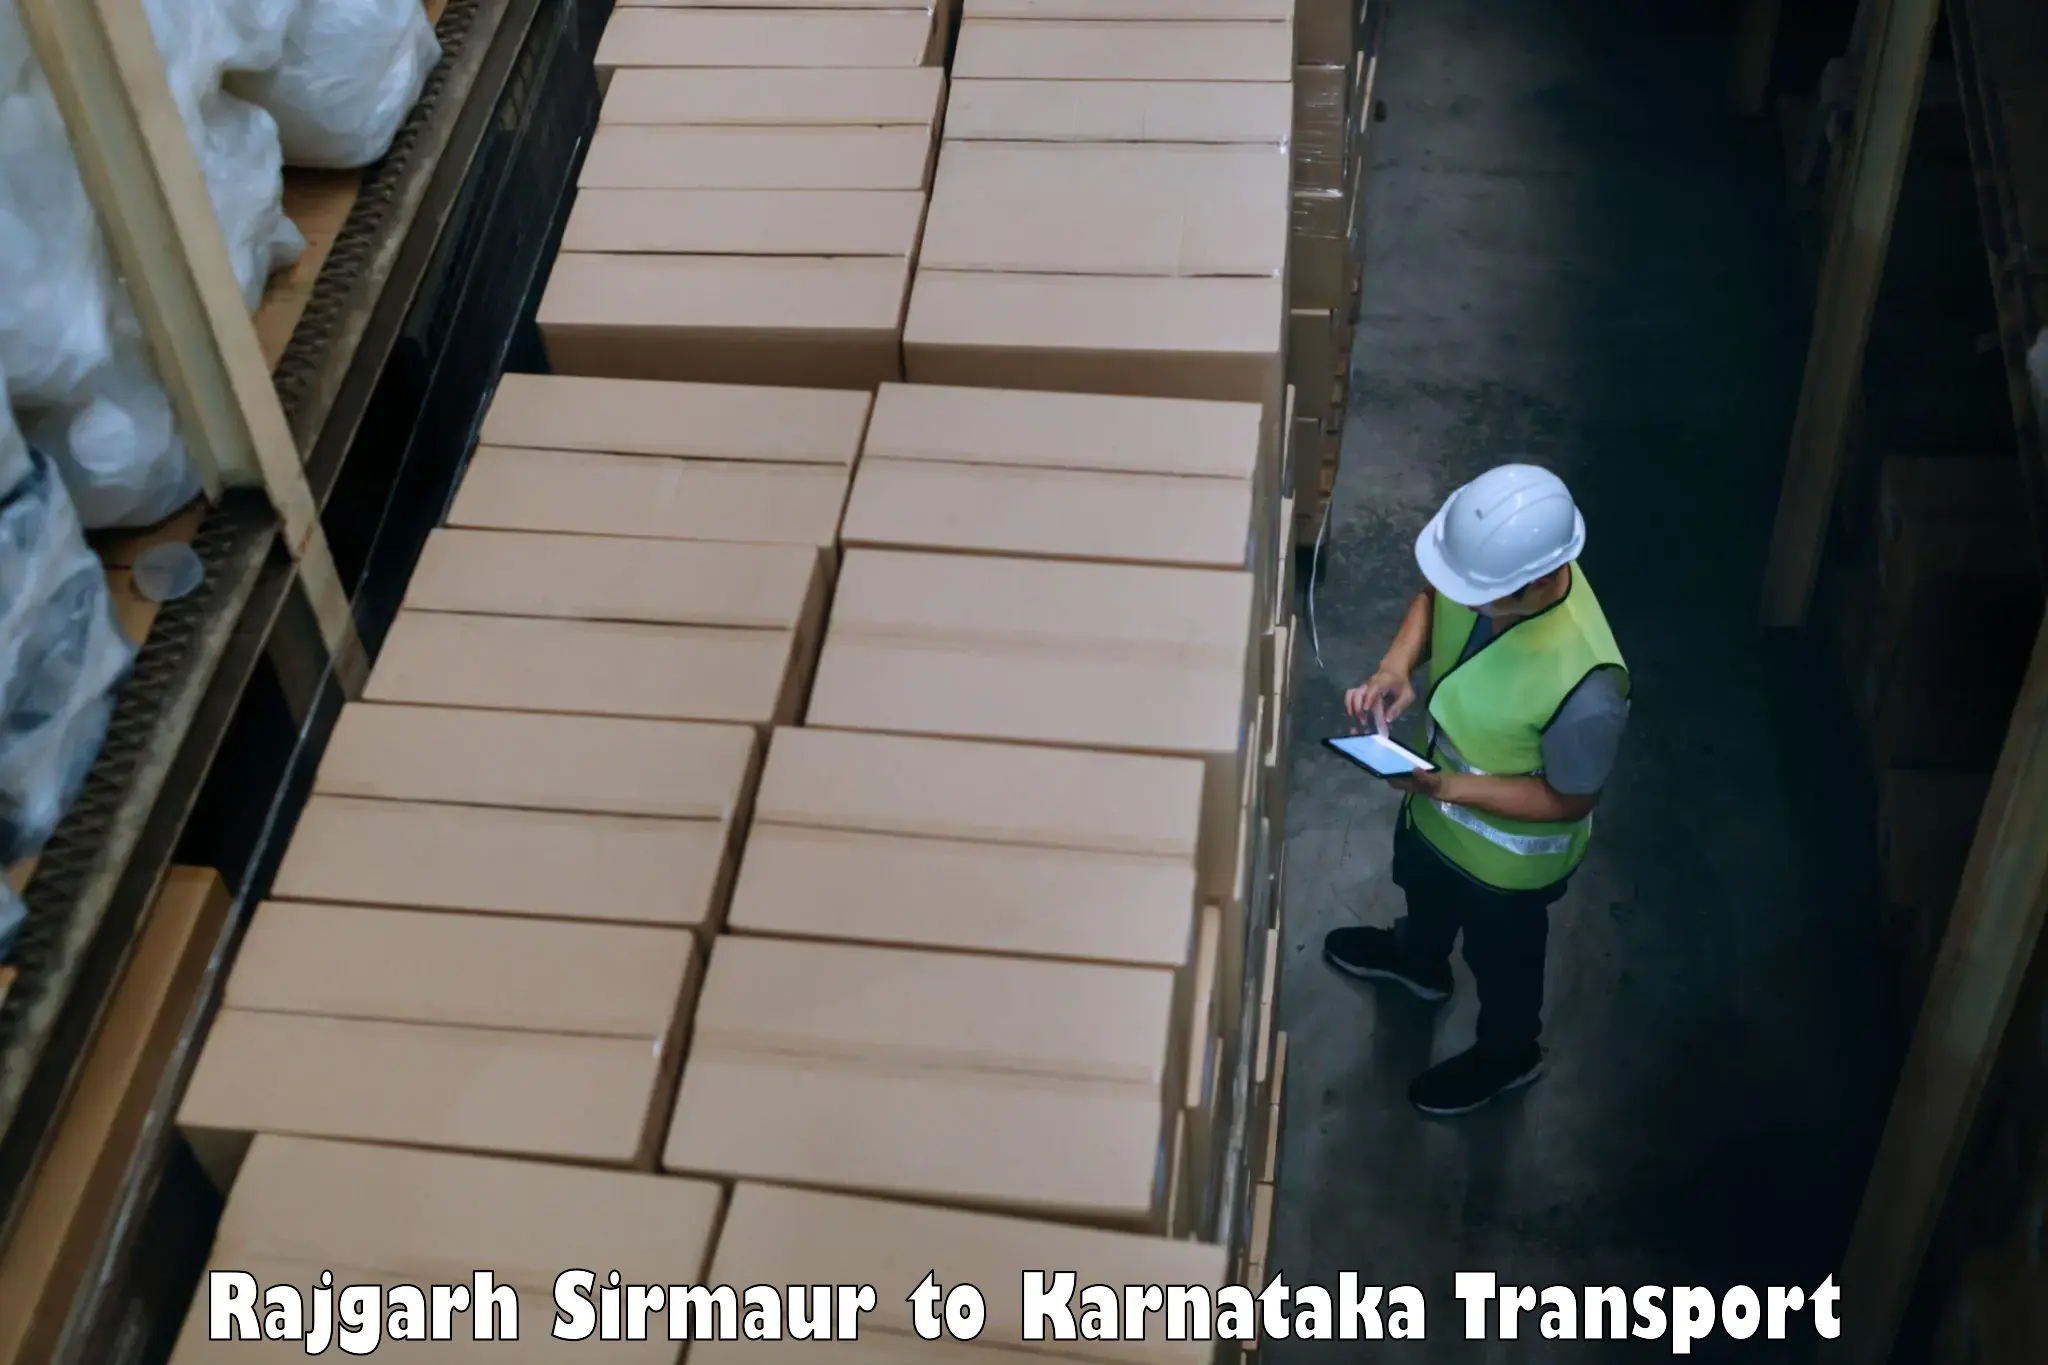 Express transport services Rajgarh Sirmaur to Mangalore